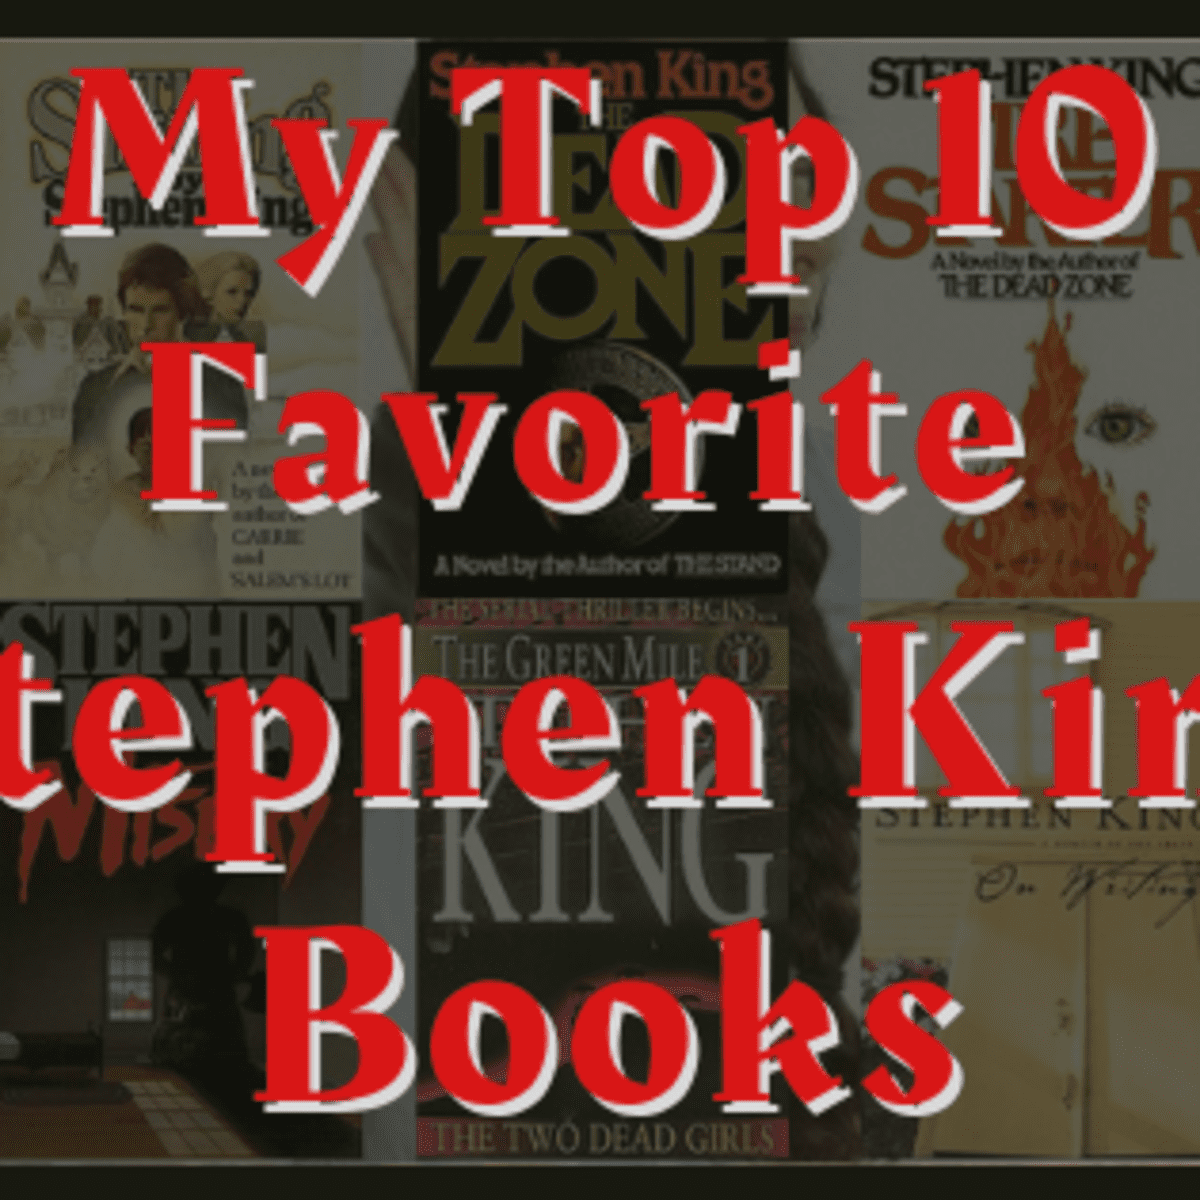 My Top 10 Favorite Stephen King